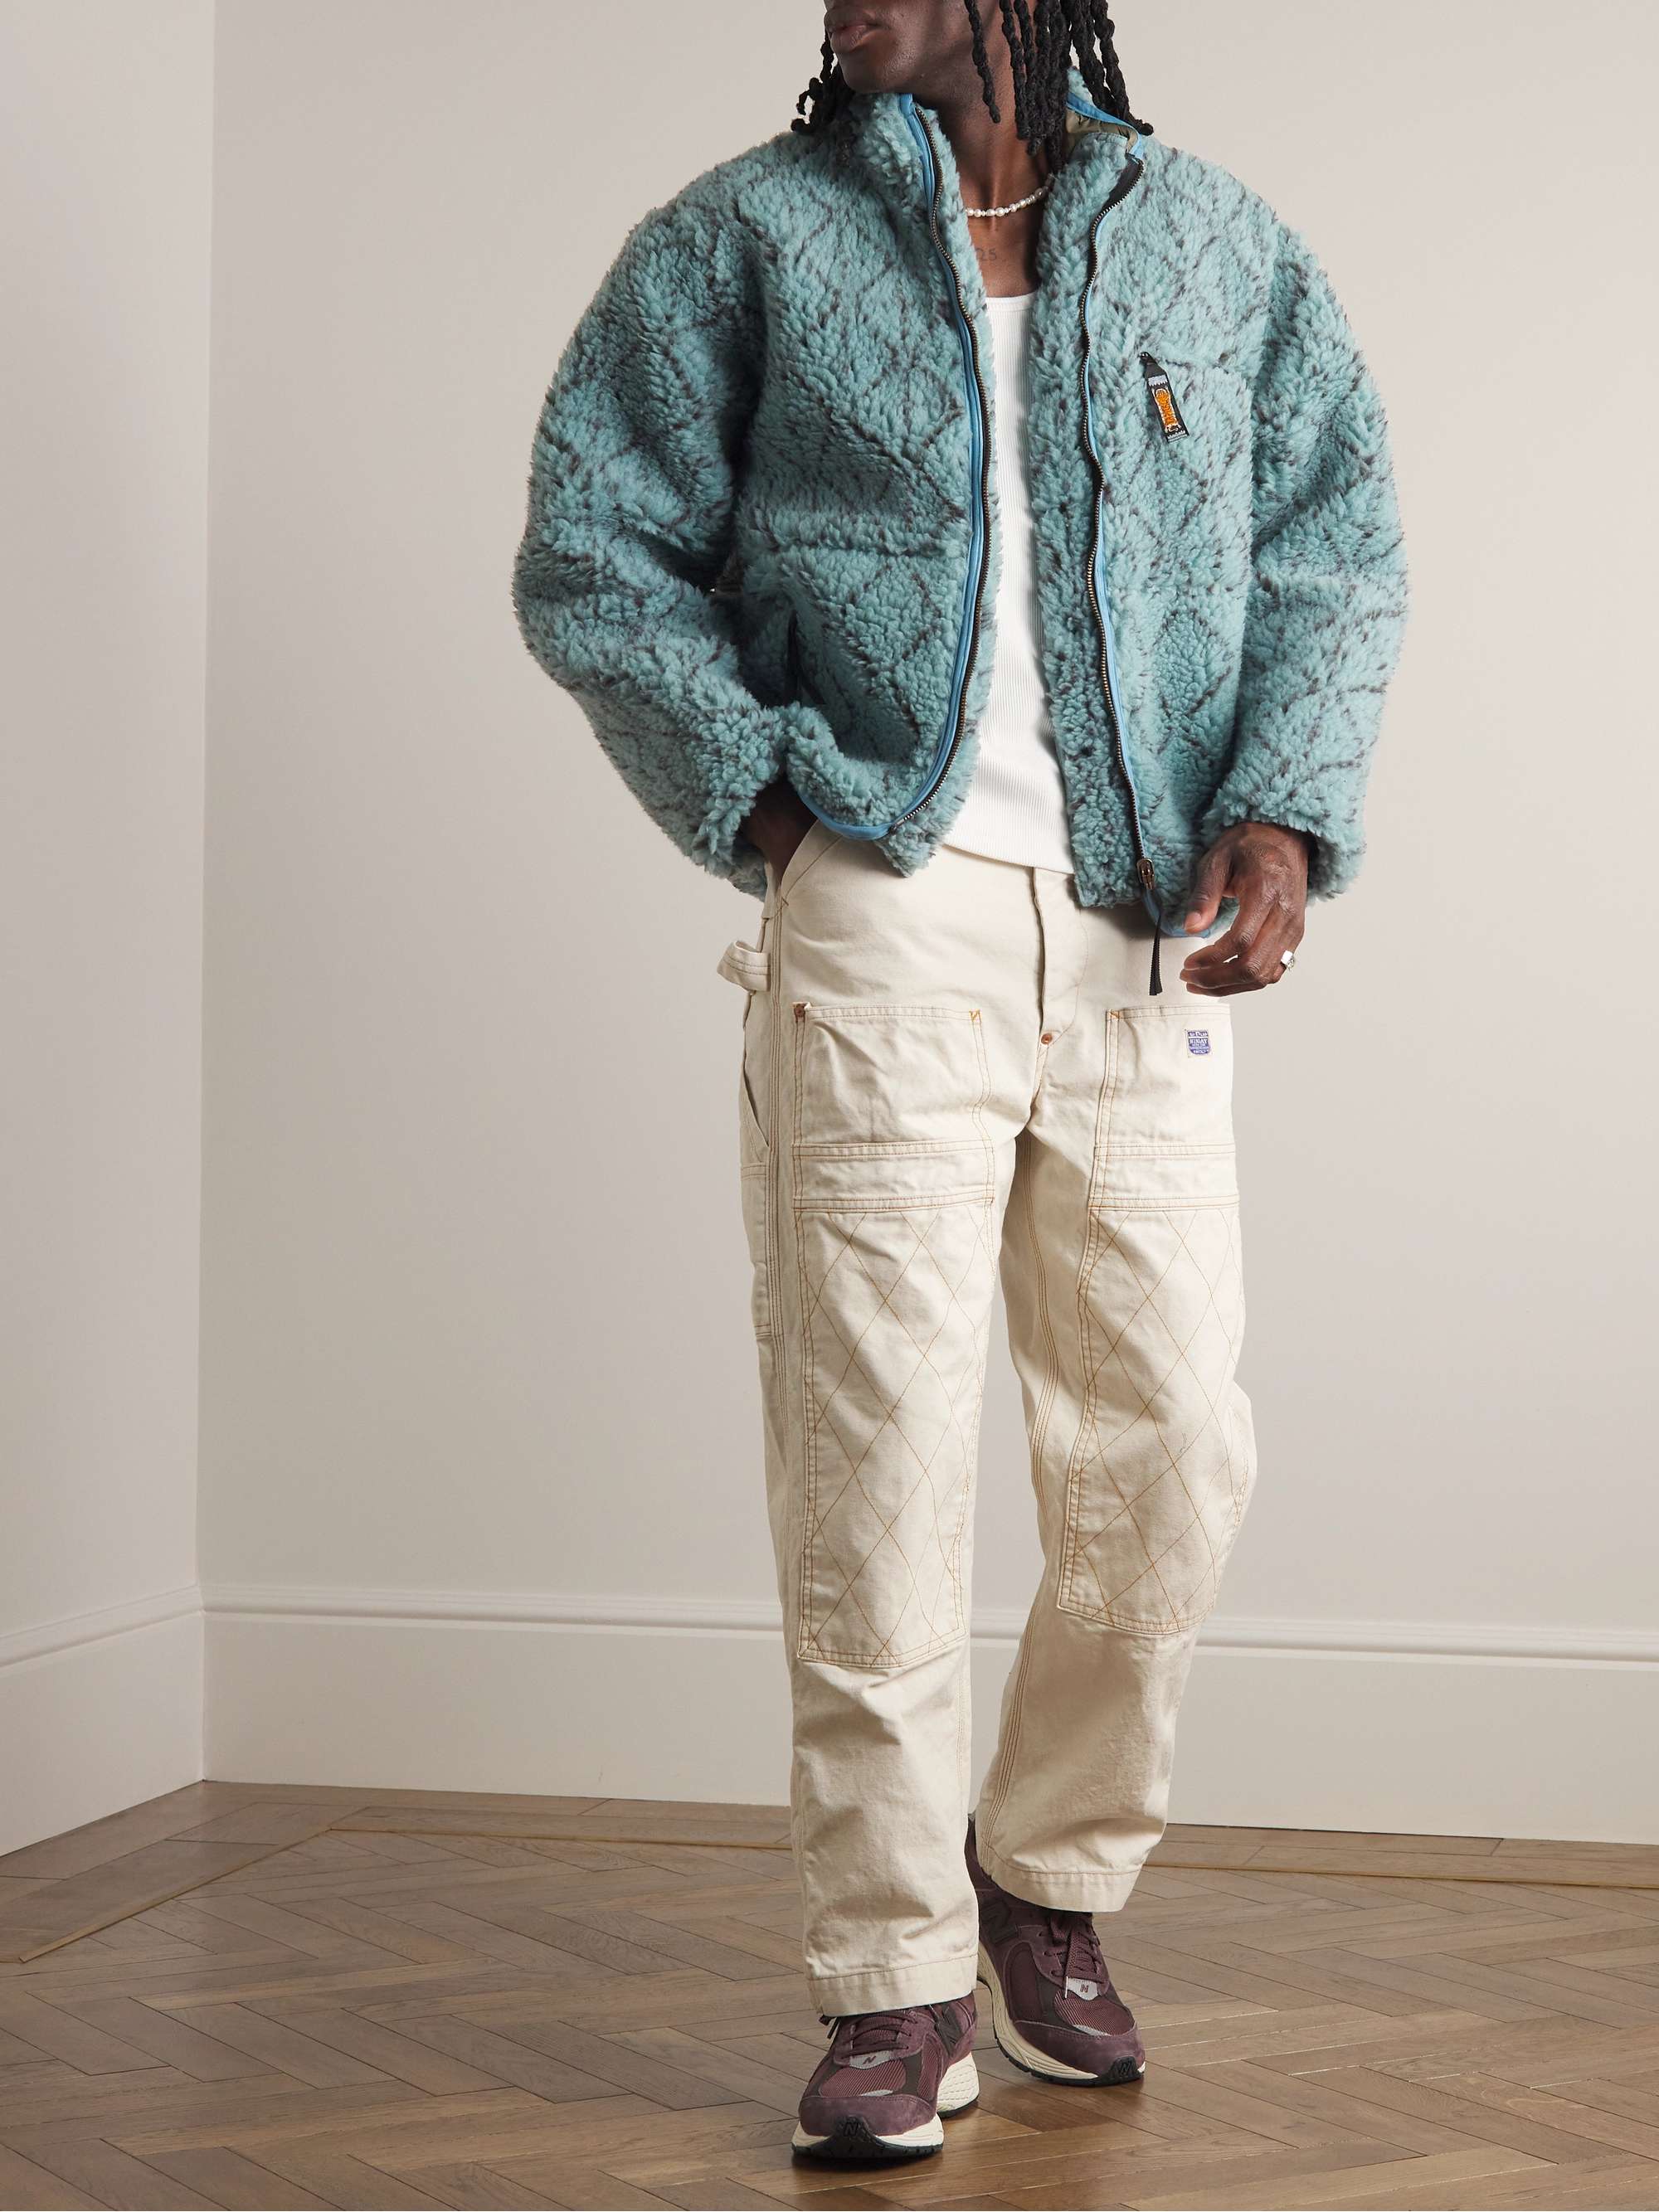 Sashiko Boa Reversible Printed Fleece and Shell Jacket